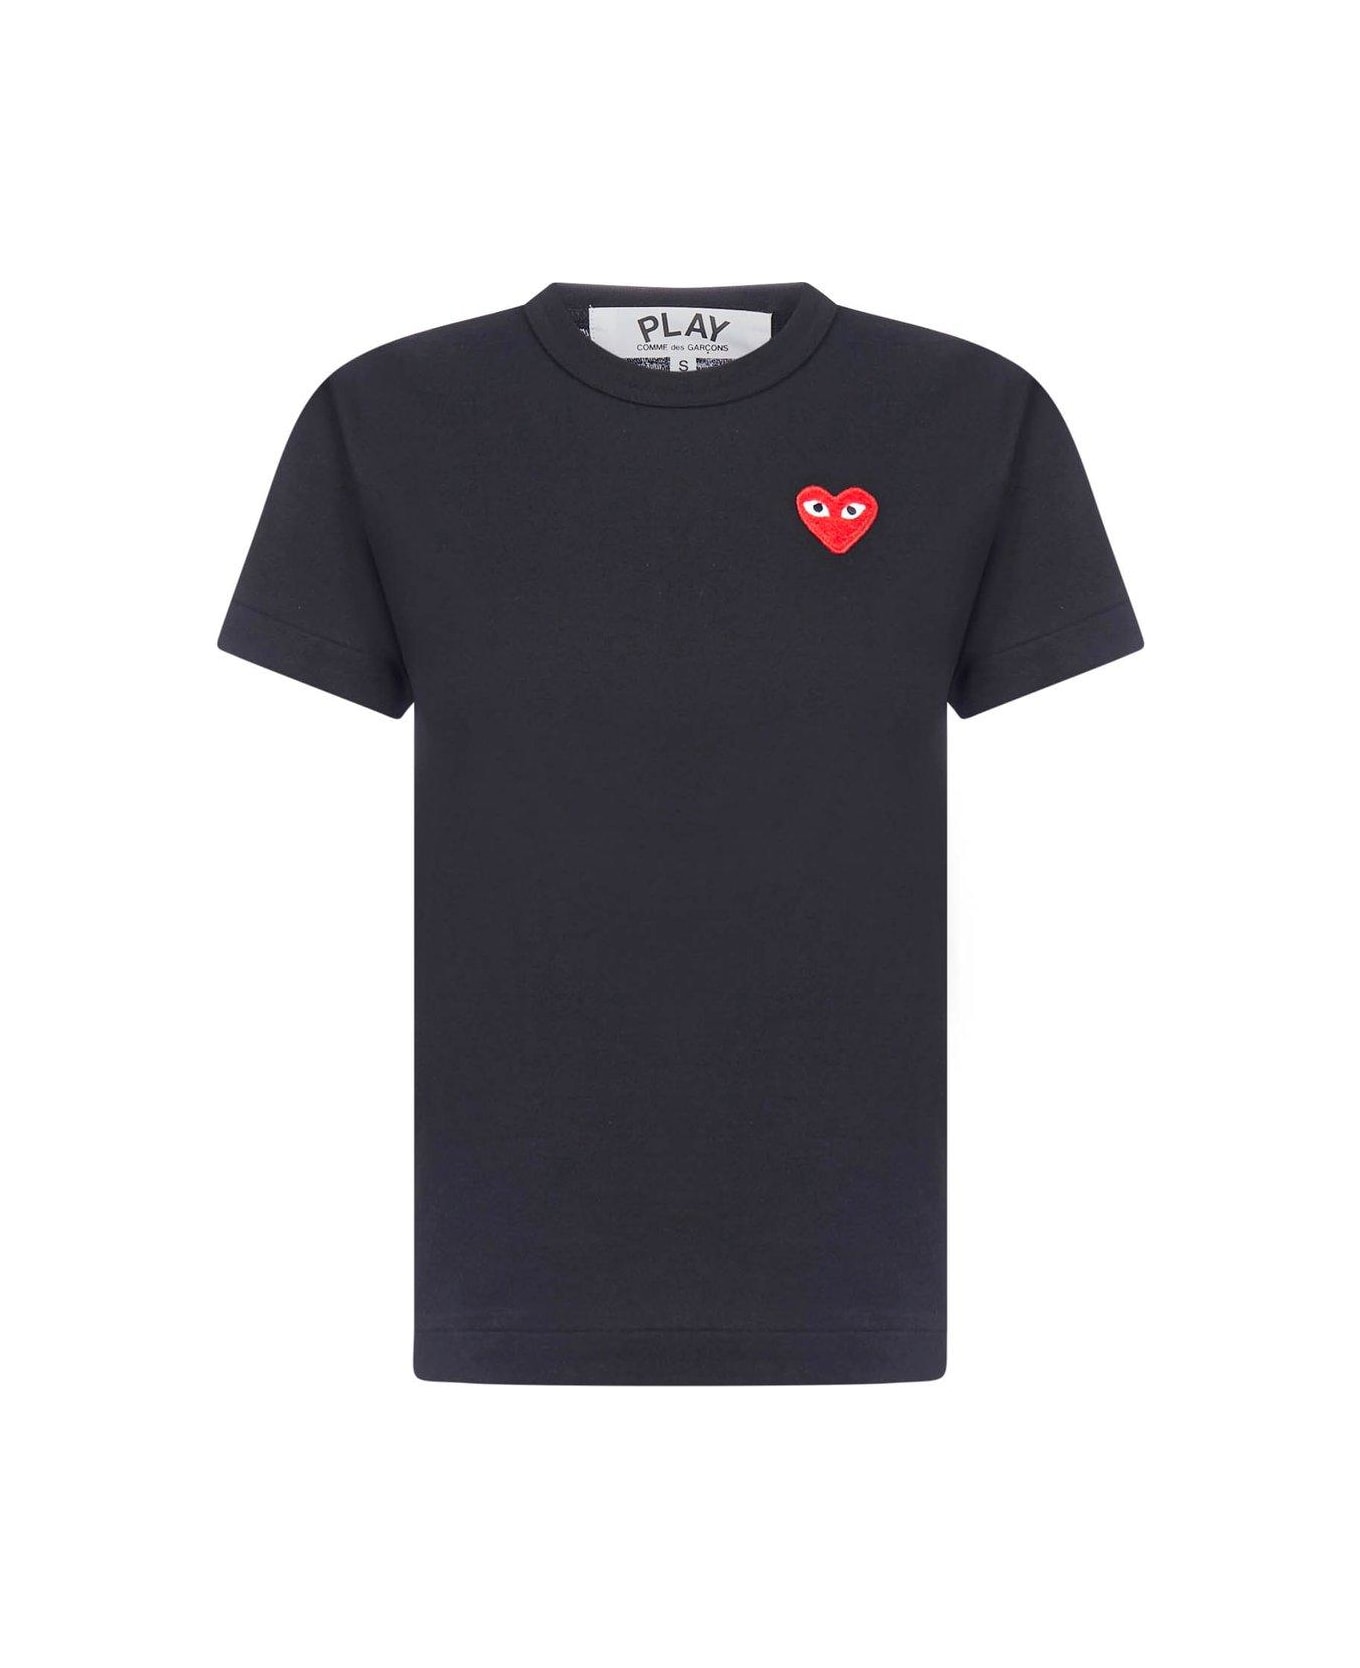 Comme des Garçons Play Crewneck T-shirt - Black Tシャツ